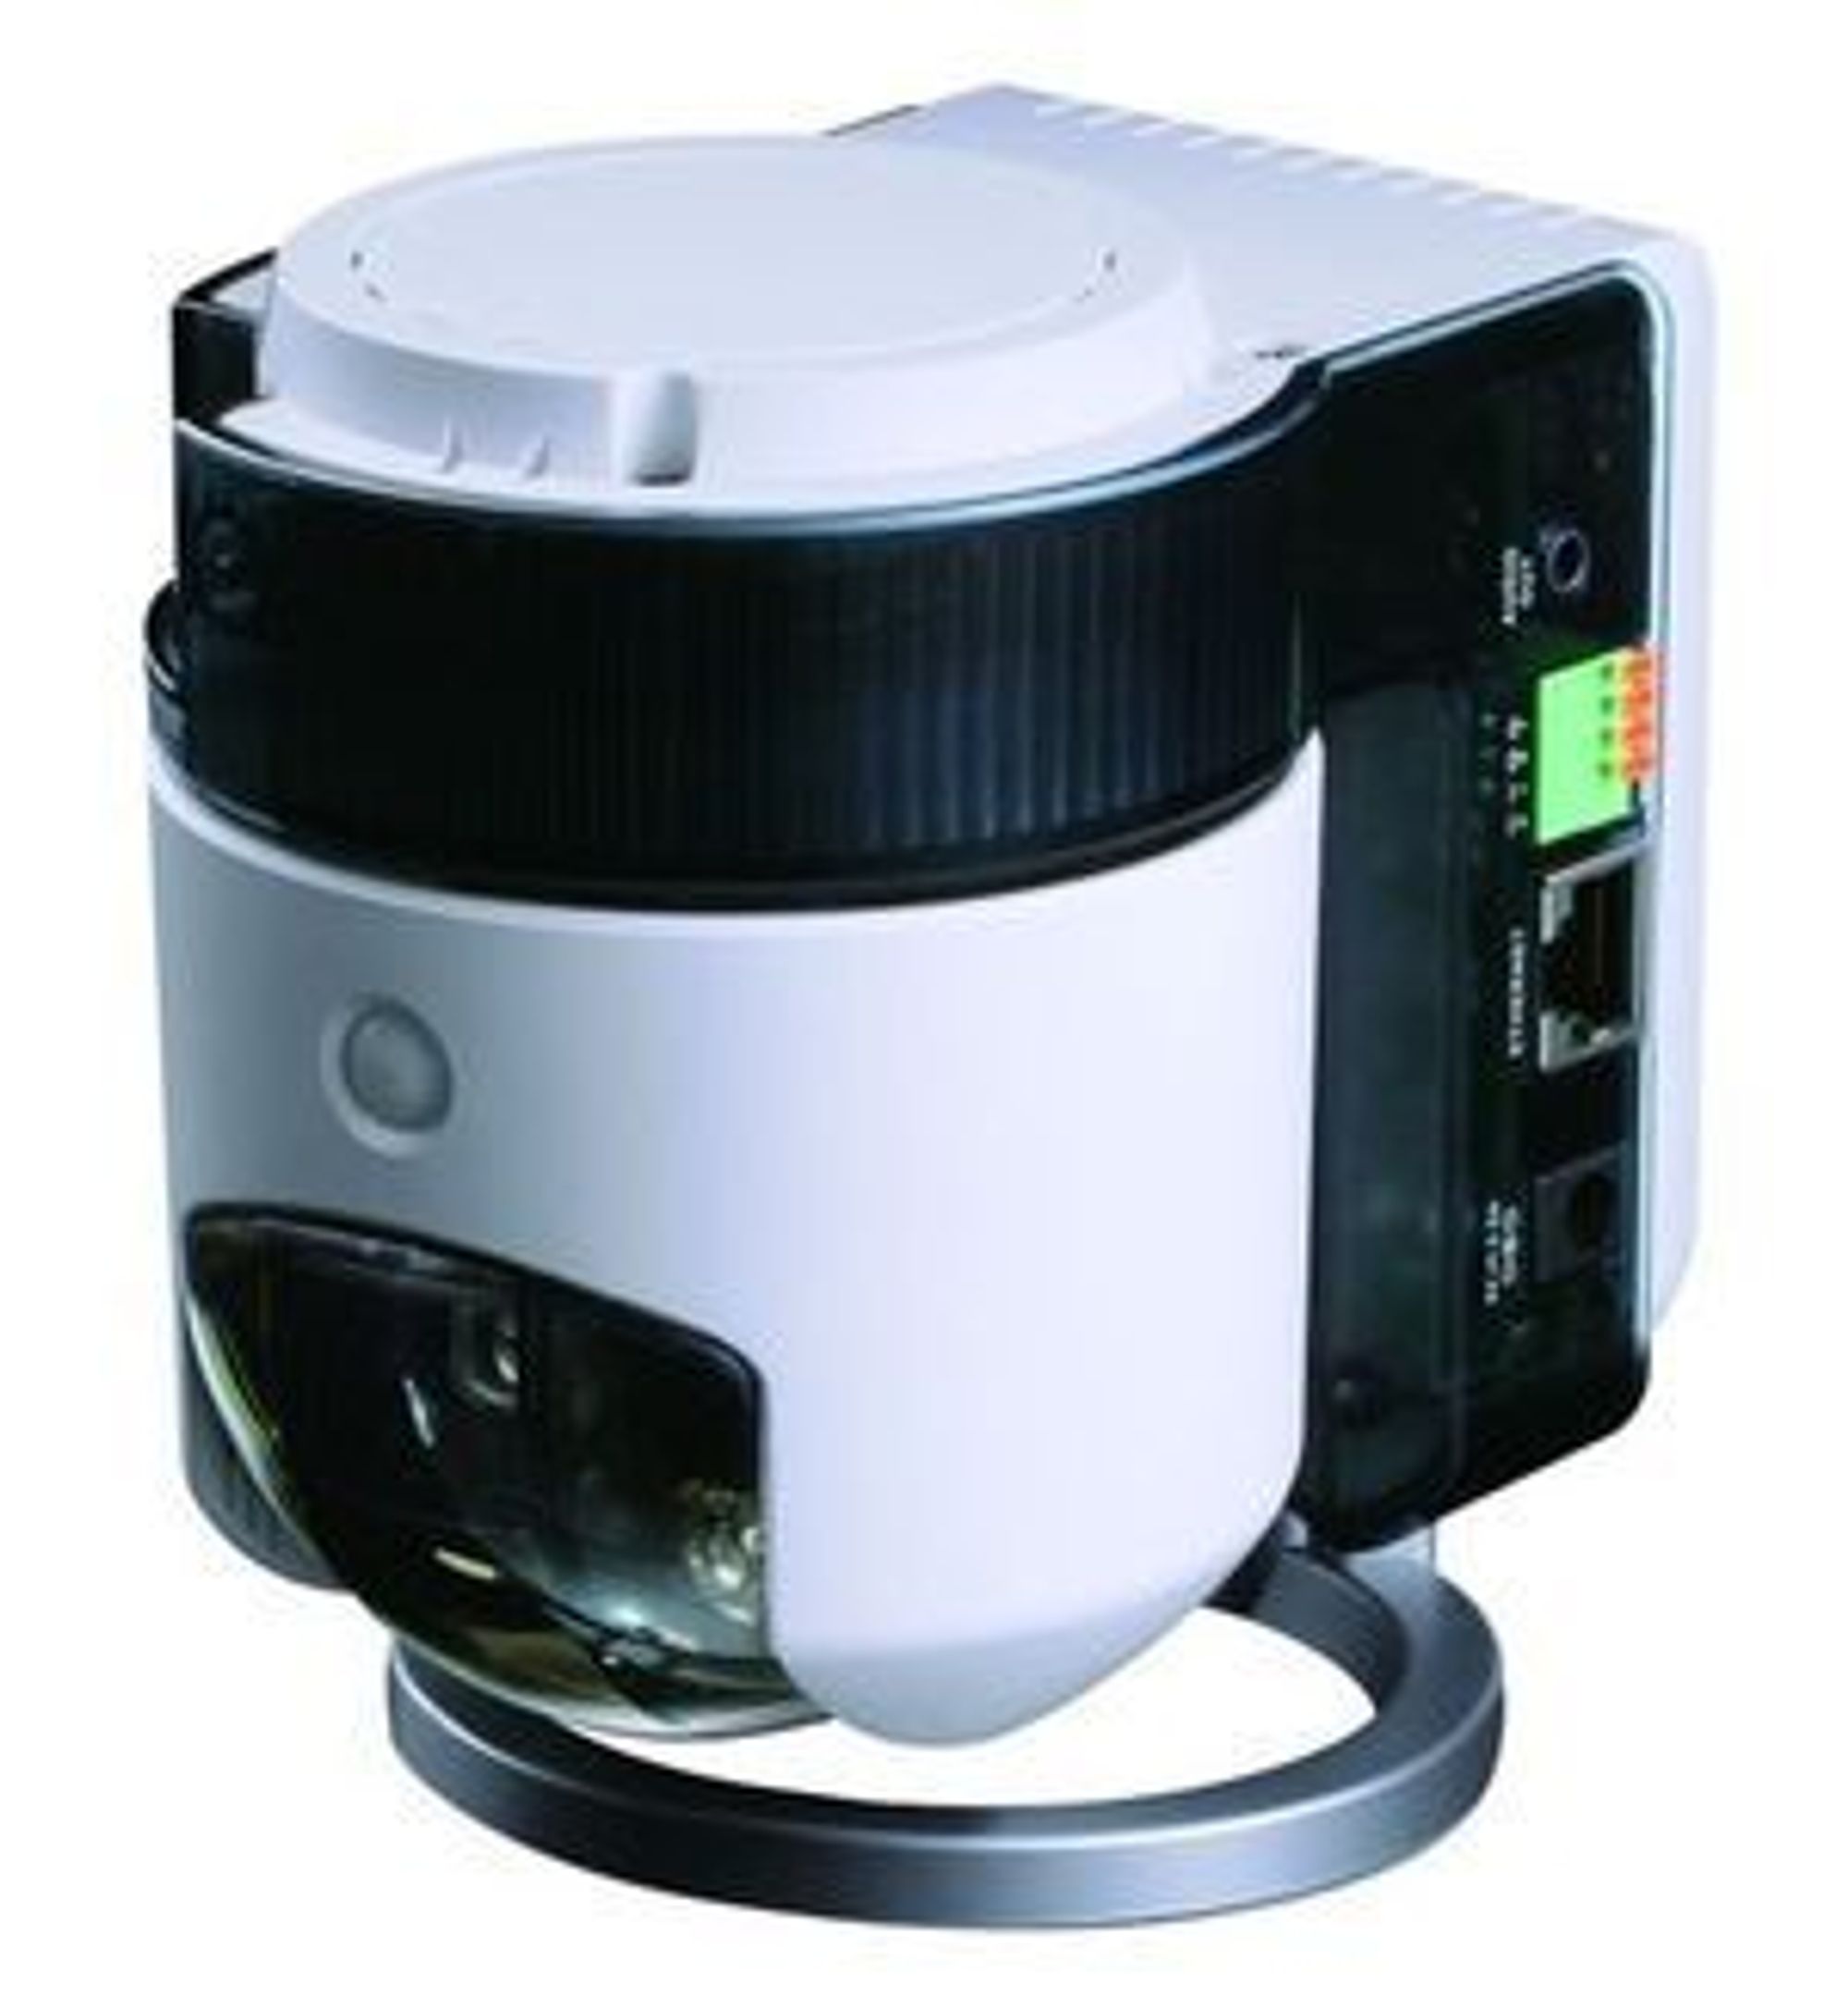 D-Links overvåkingskamera DCS-5230 har panorering, tilt og zoom, som alle styres gjennom en nettleser.